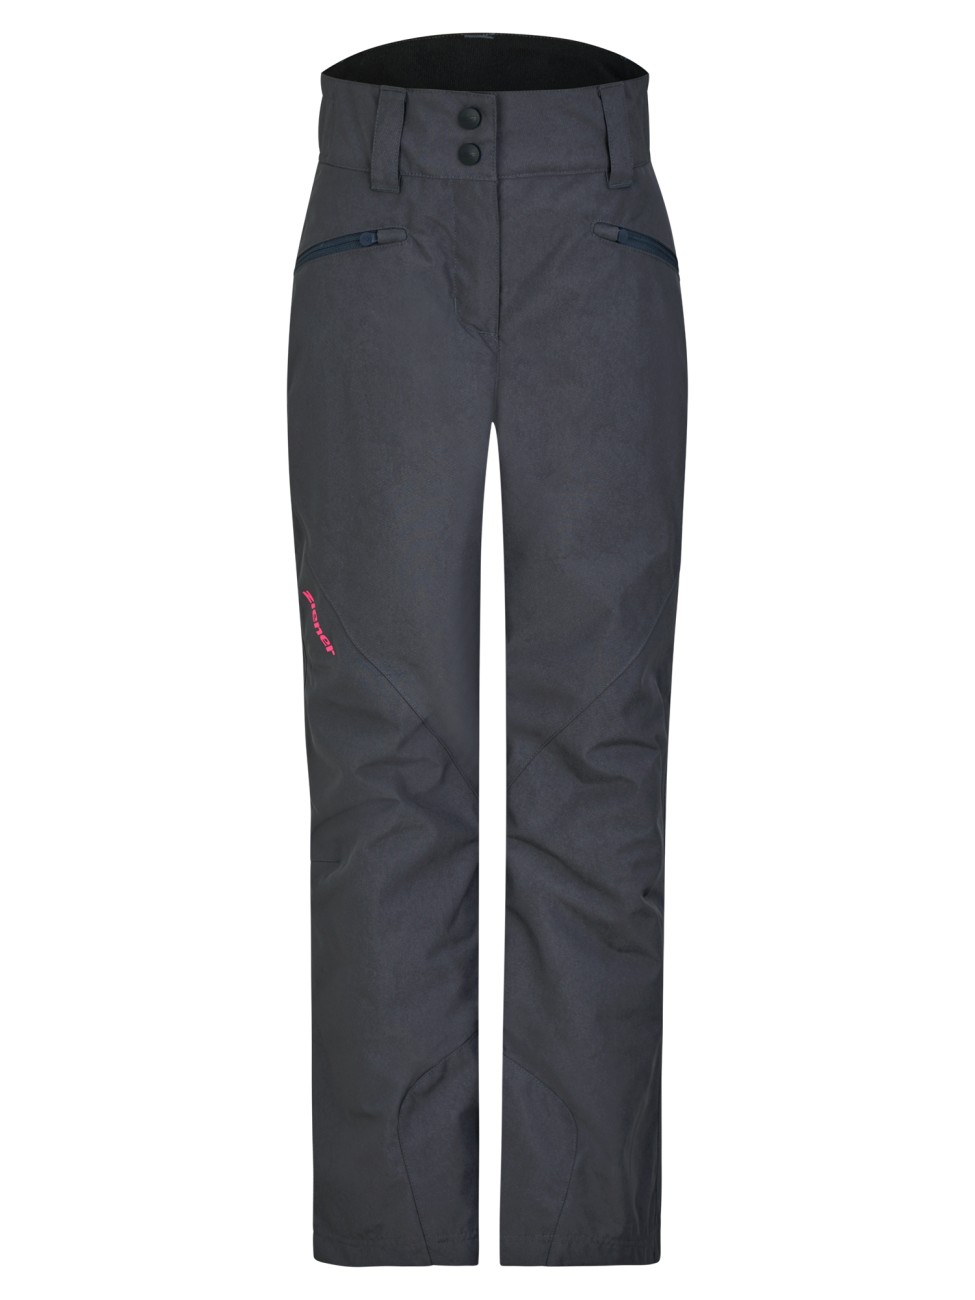 ZIENER ALIN jun (pants ski) 352 ombre washed online kaufen